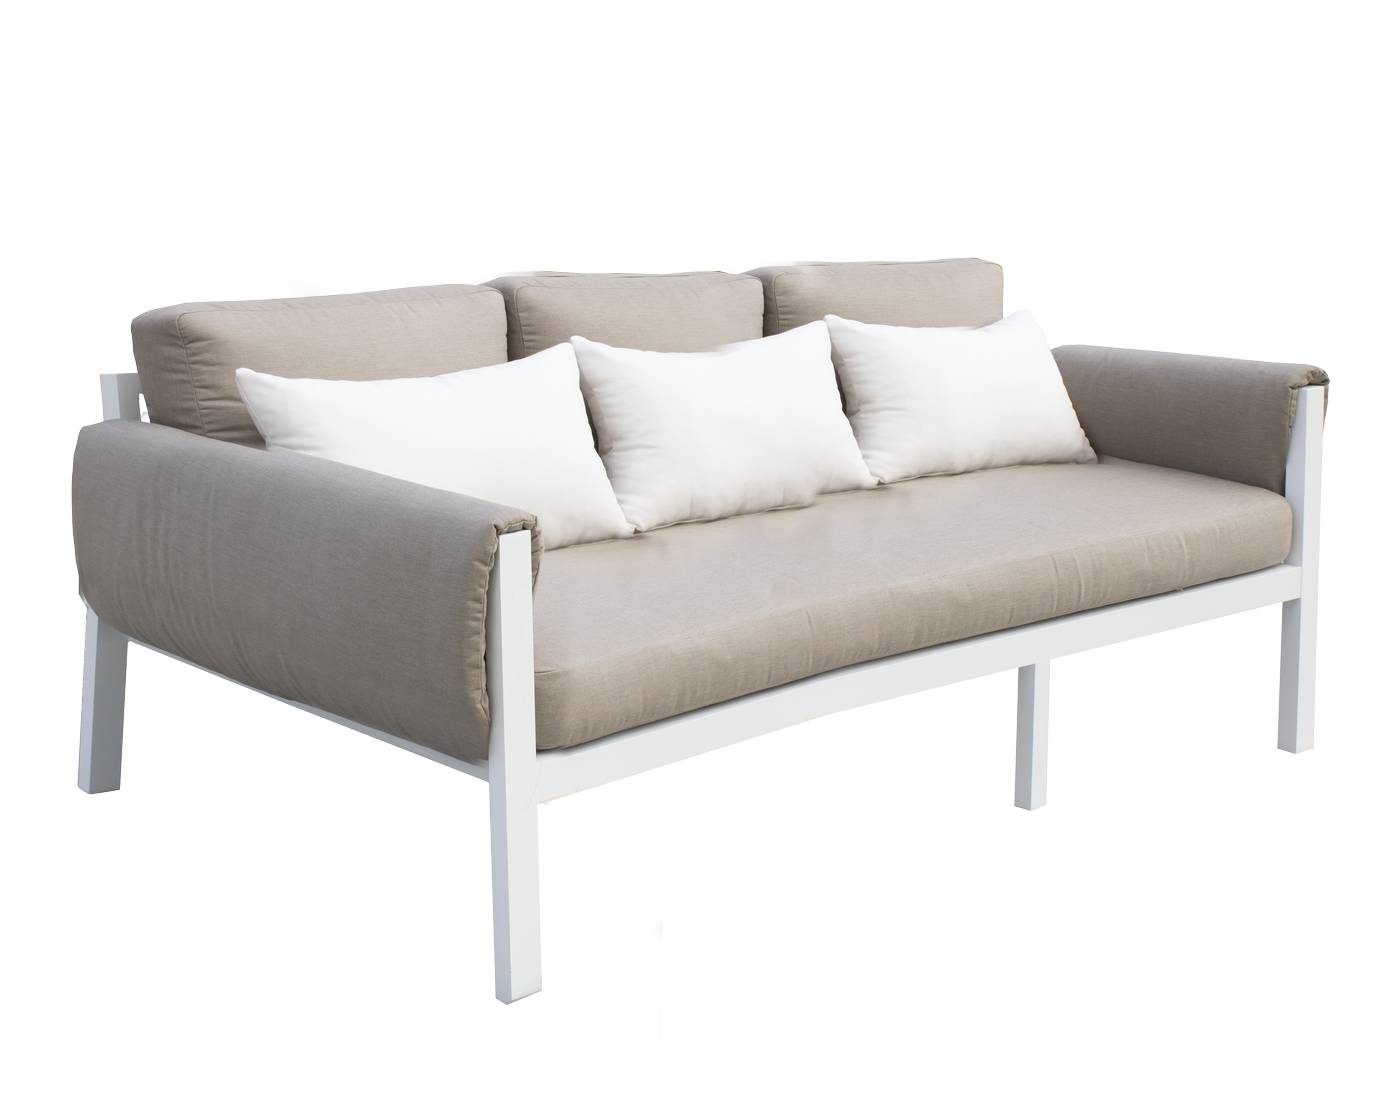 Set Arizona-10 - Conjunto aluminio con opción de cojines en los brazos: sofá de 3 plazas + 2 sillones + 1 mesa de centro + 2 reposapiés. En color: blanco, antracita, marrón, champagne o plata.